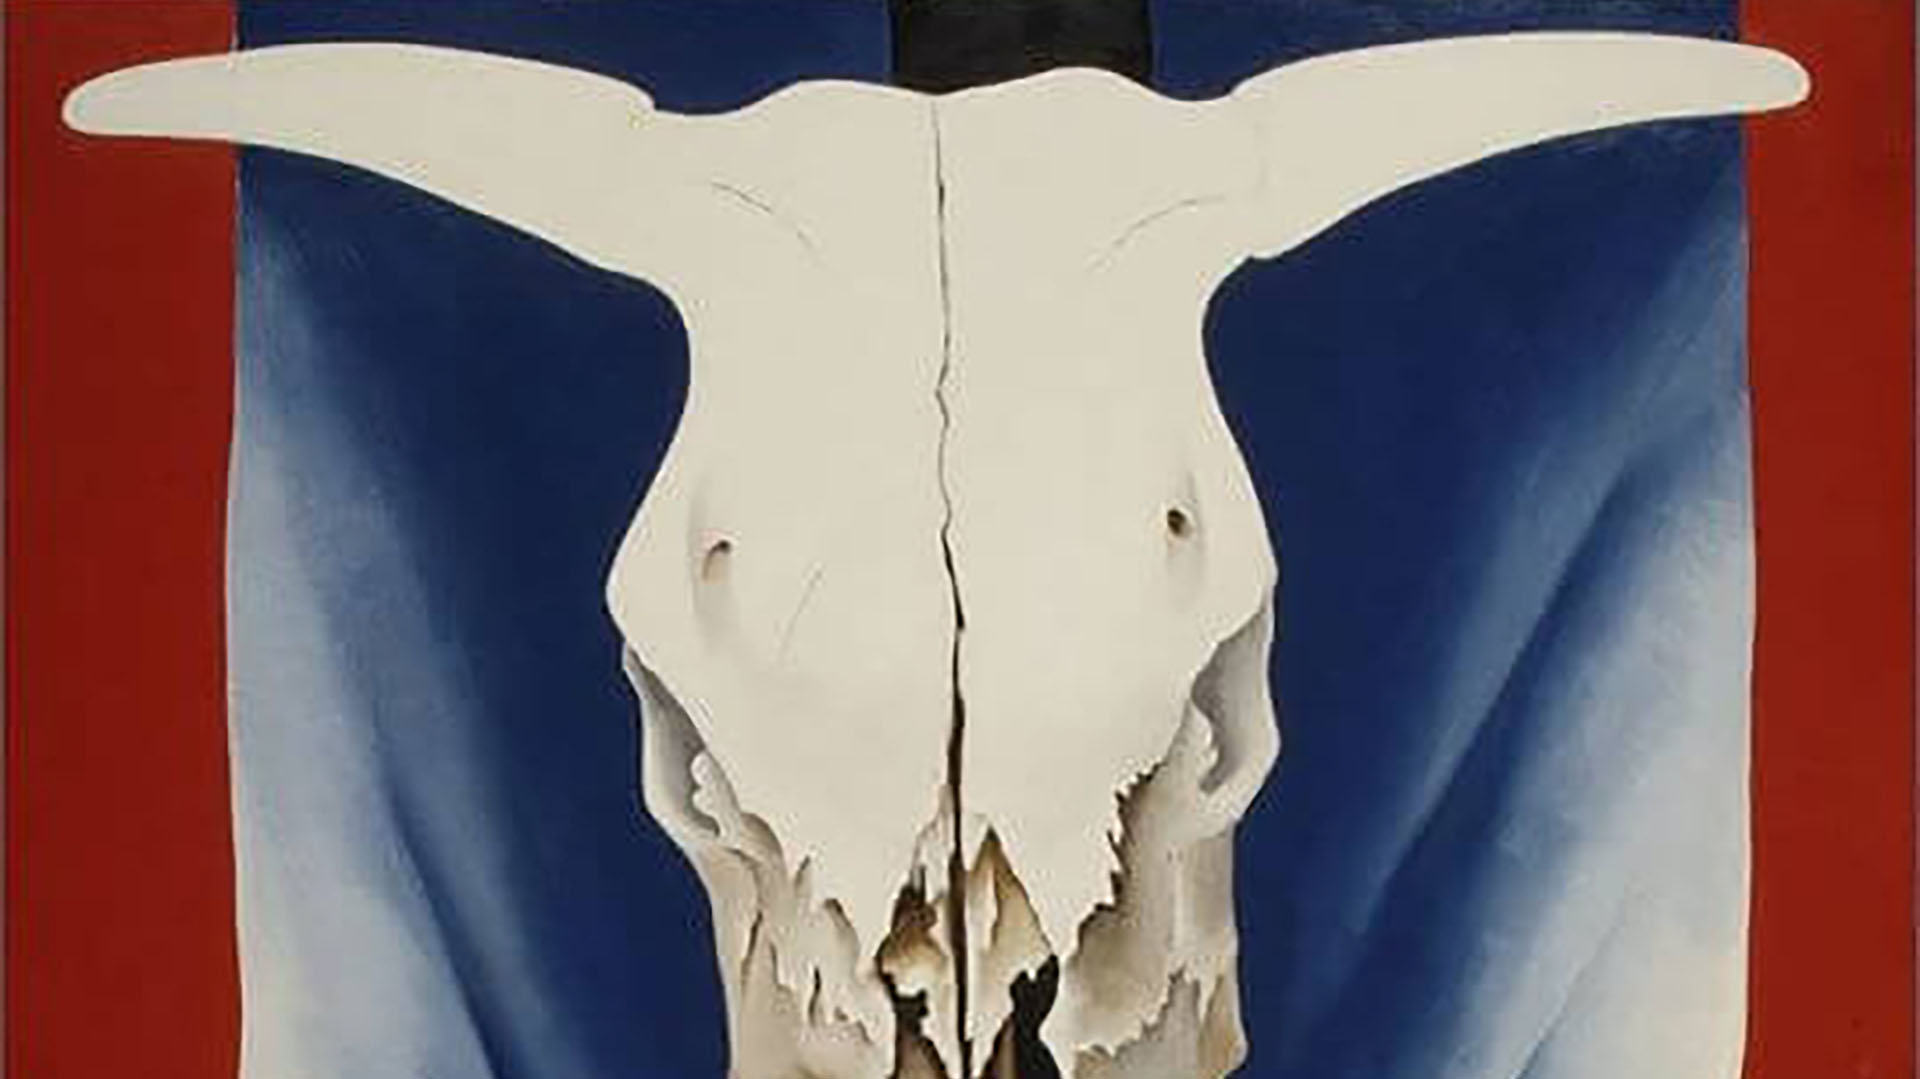 La belleza de la semana: “Cráneo de vaca: Rojo, blanco y azul”, de Georgia O’Keeffe